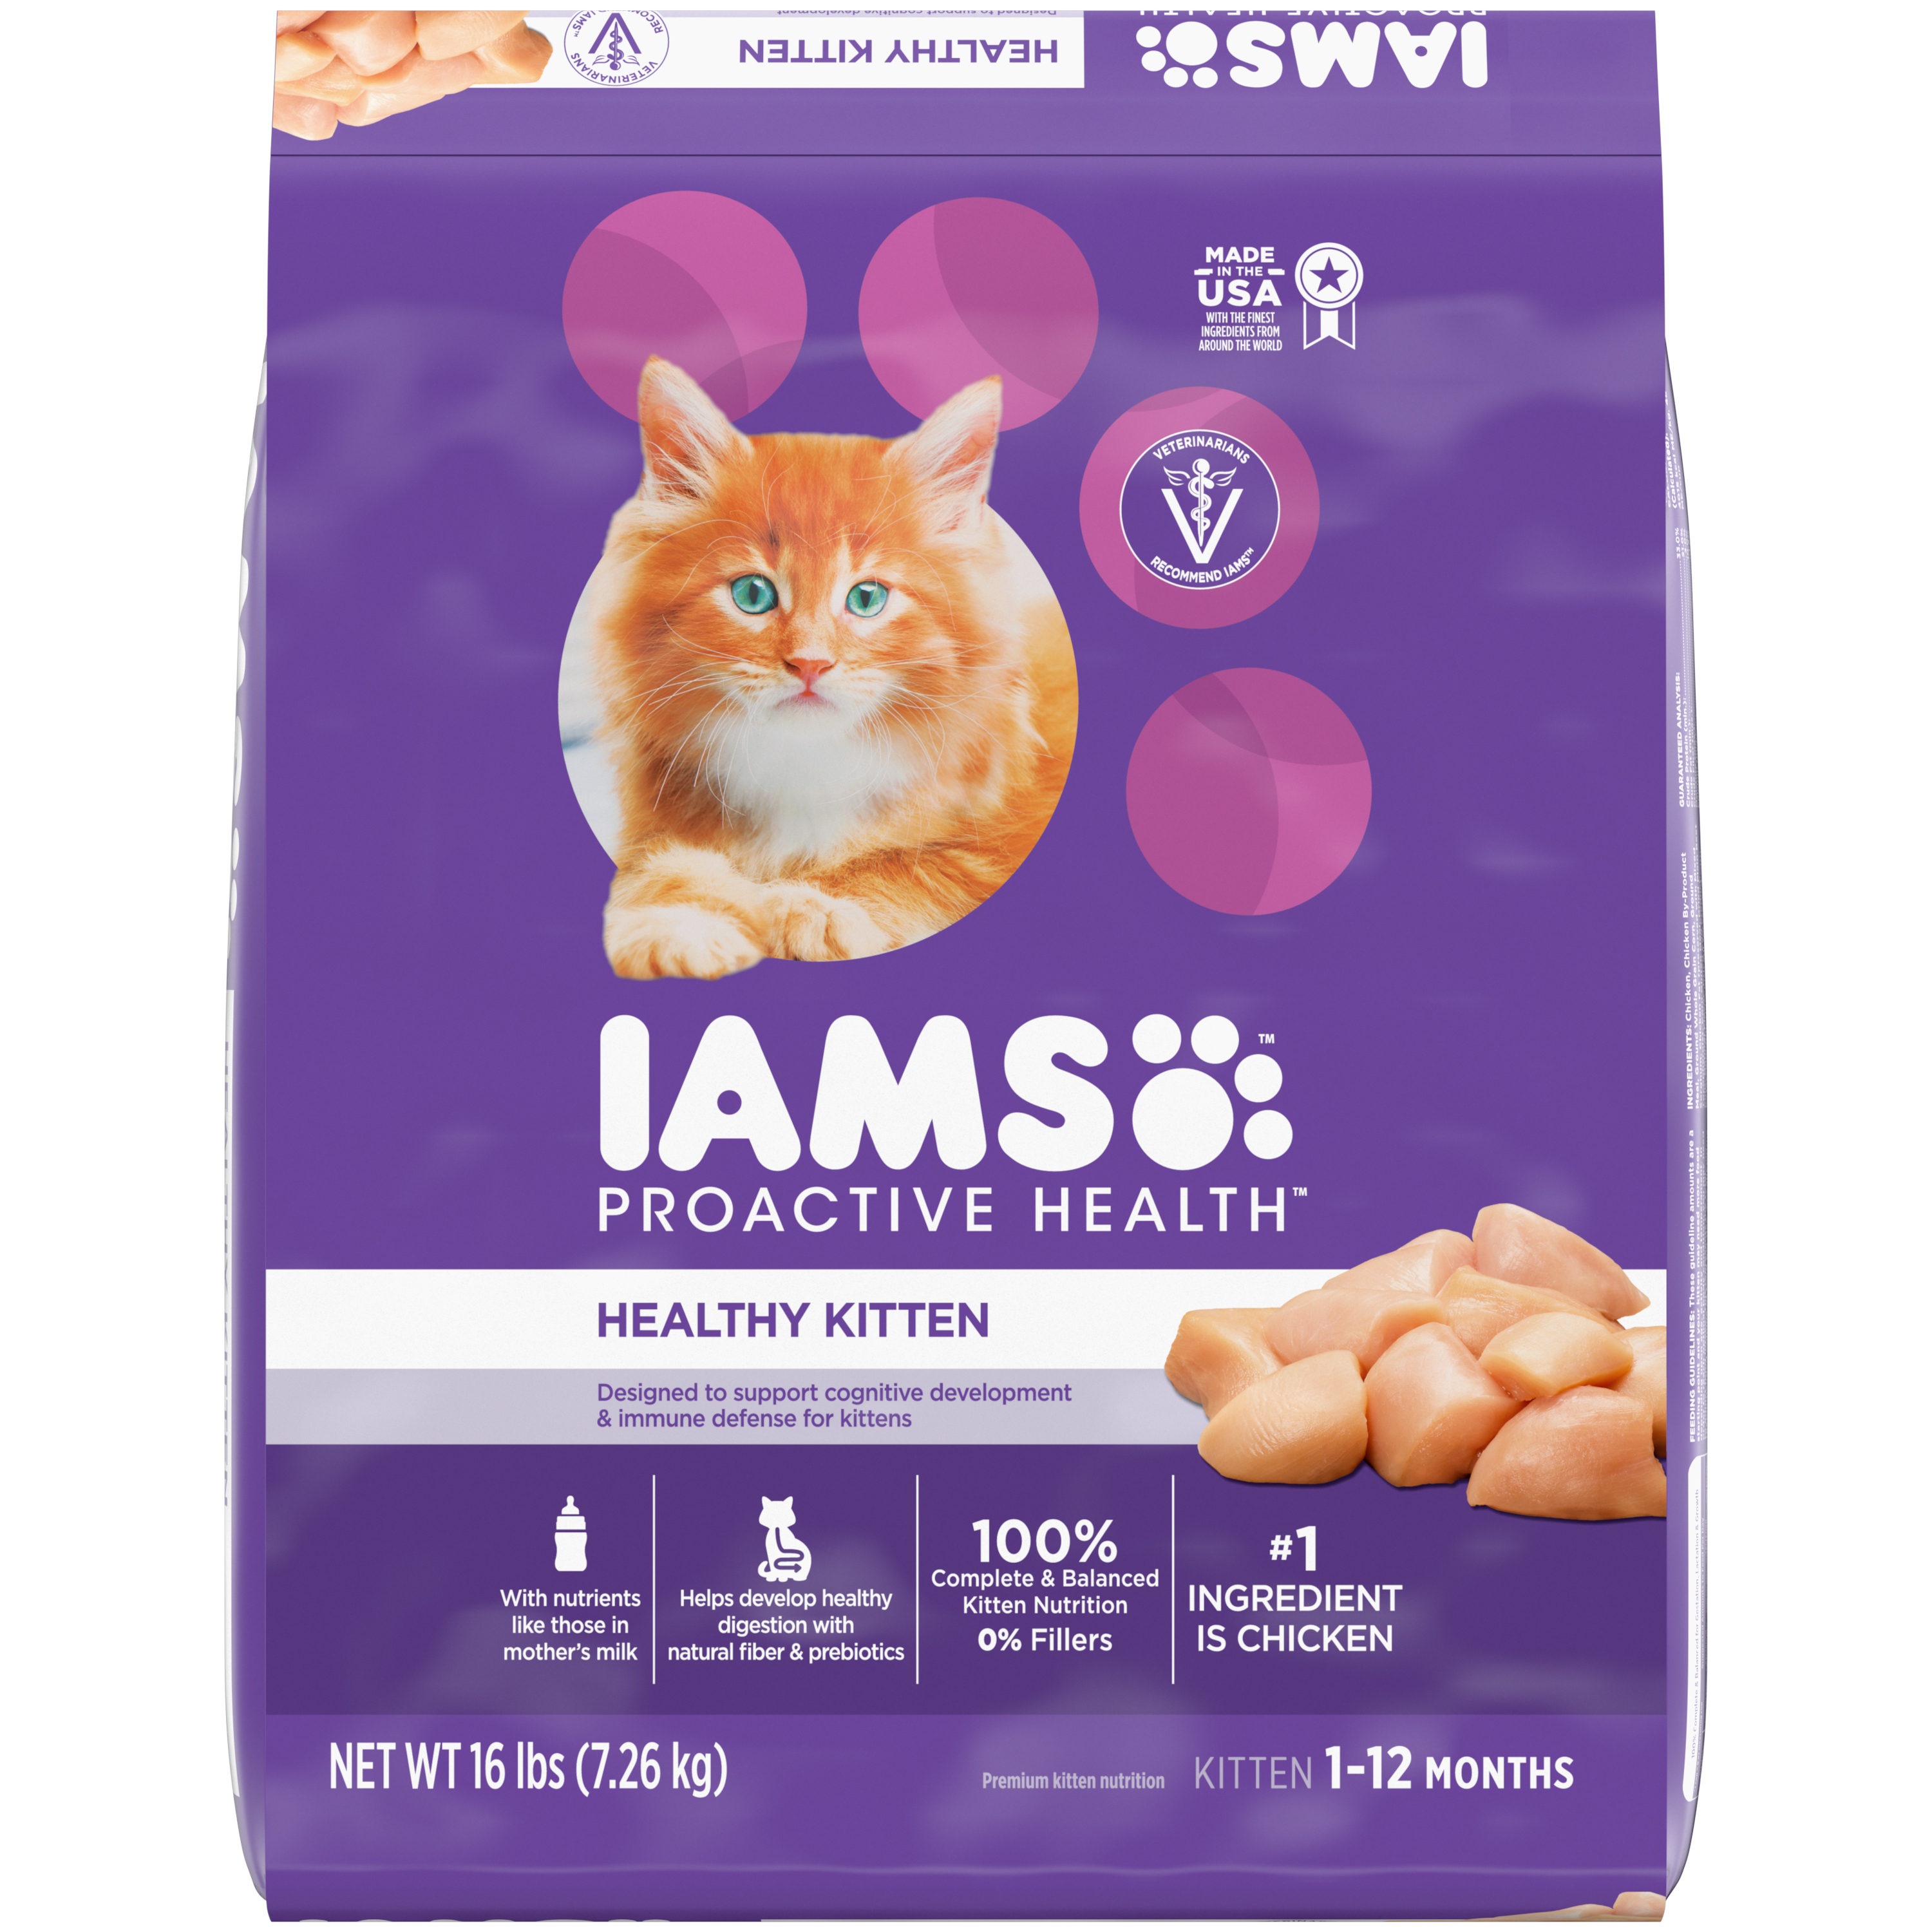 16 Lb Iams Healthy Kitten - Health/First Aid